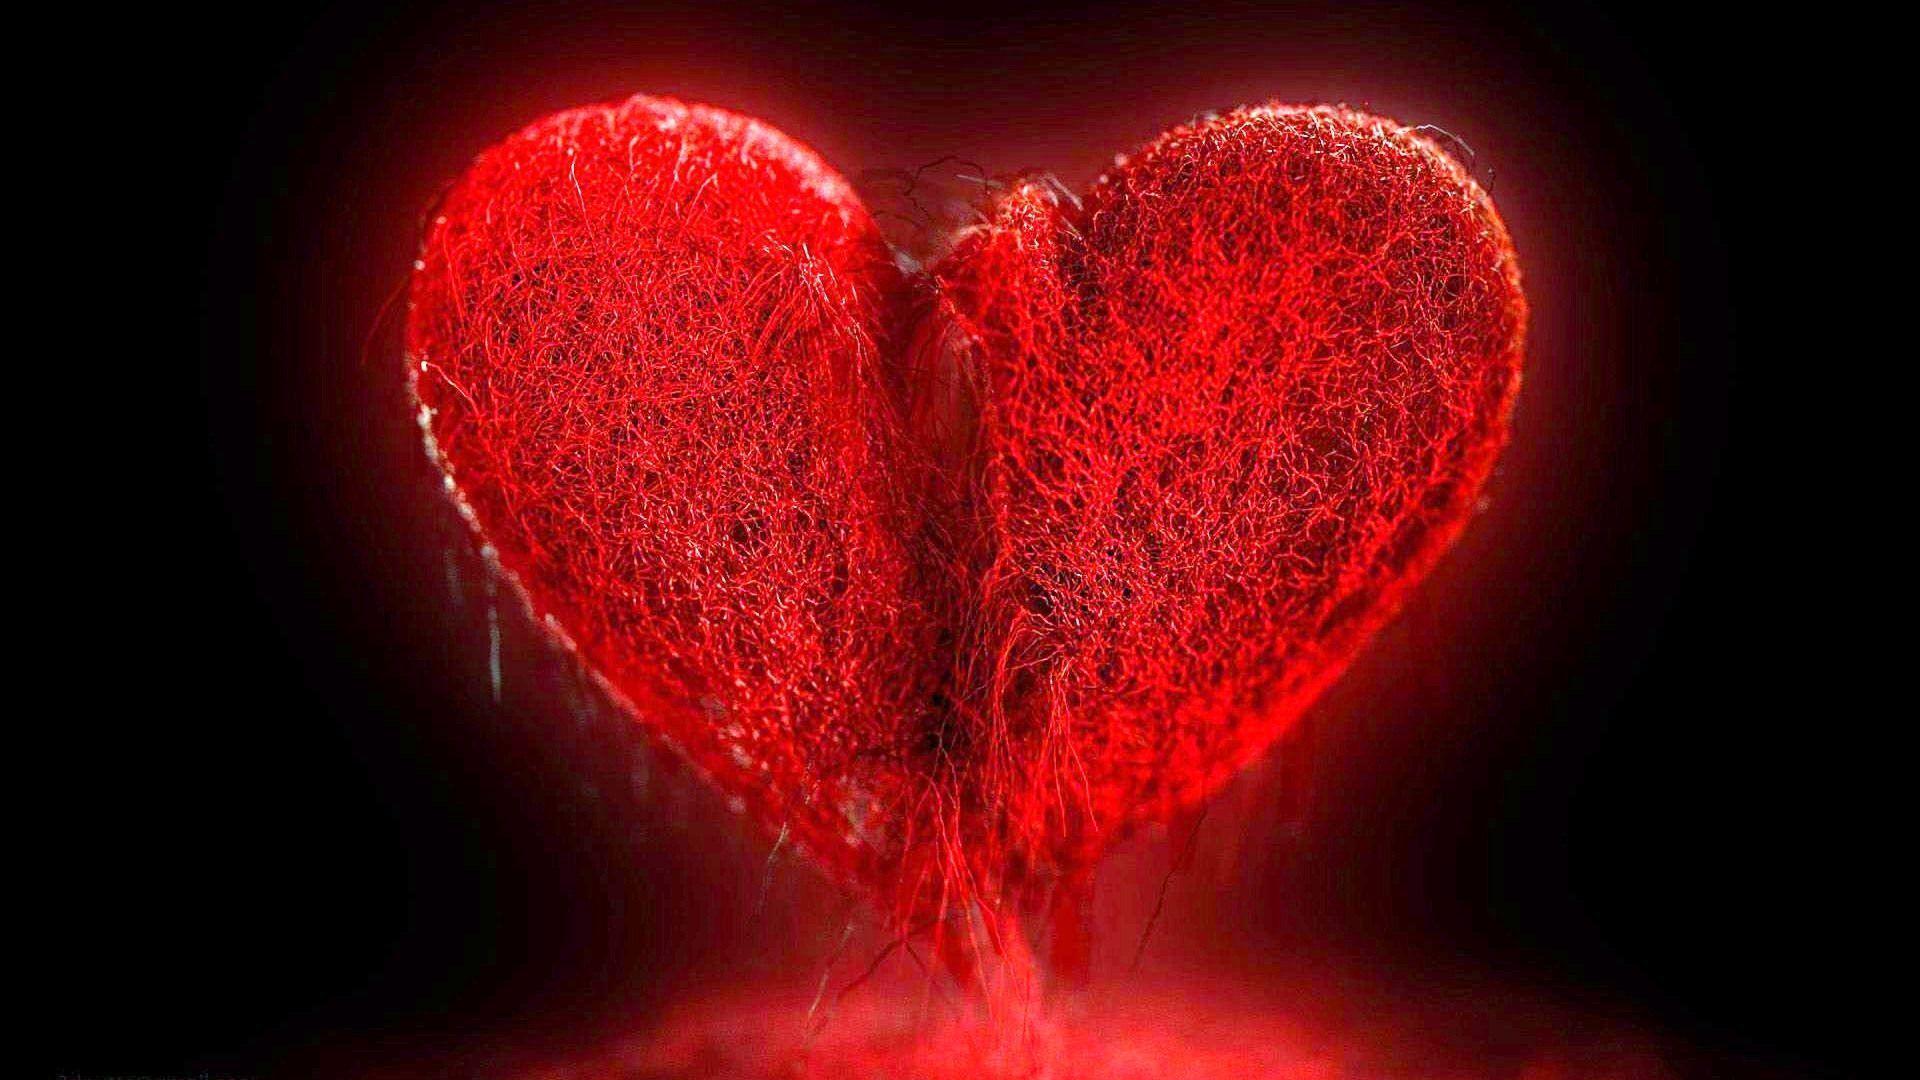 Hình nền trái tim vỡ: Hãy thưởng thức hình nền trái tim vỡ đầy cảm xúc này, mô tả tình trạng của một trái tim đang trải qua cảm xúc đau đớn. Nhưng hãy nhớ rằng, ngay cả khi trái tim bị vỡ, nó vẫn đủ mạnh để vượt qua mọi thử thách.